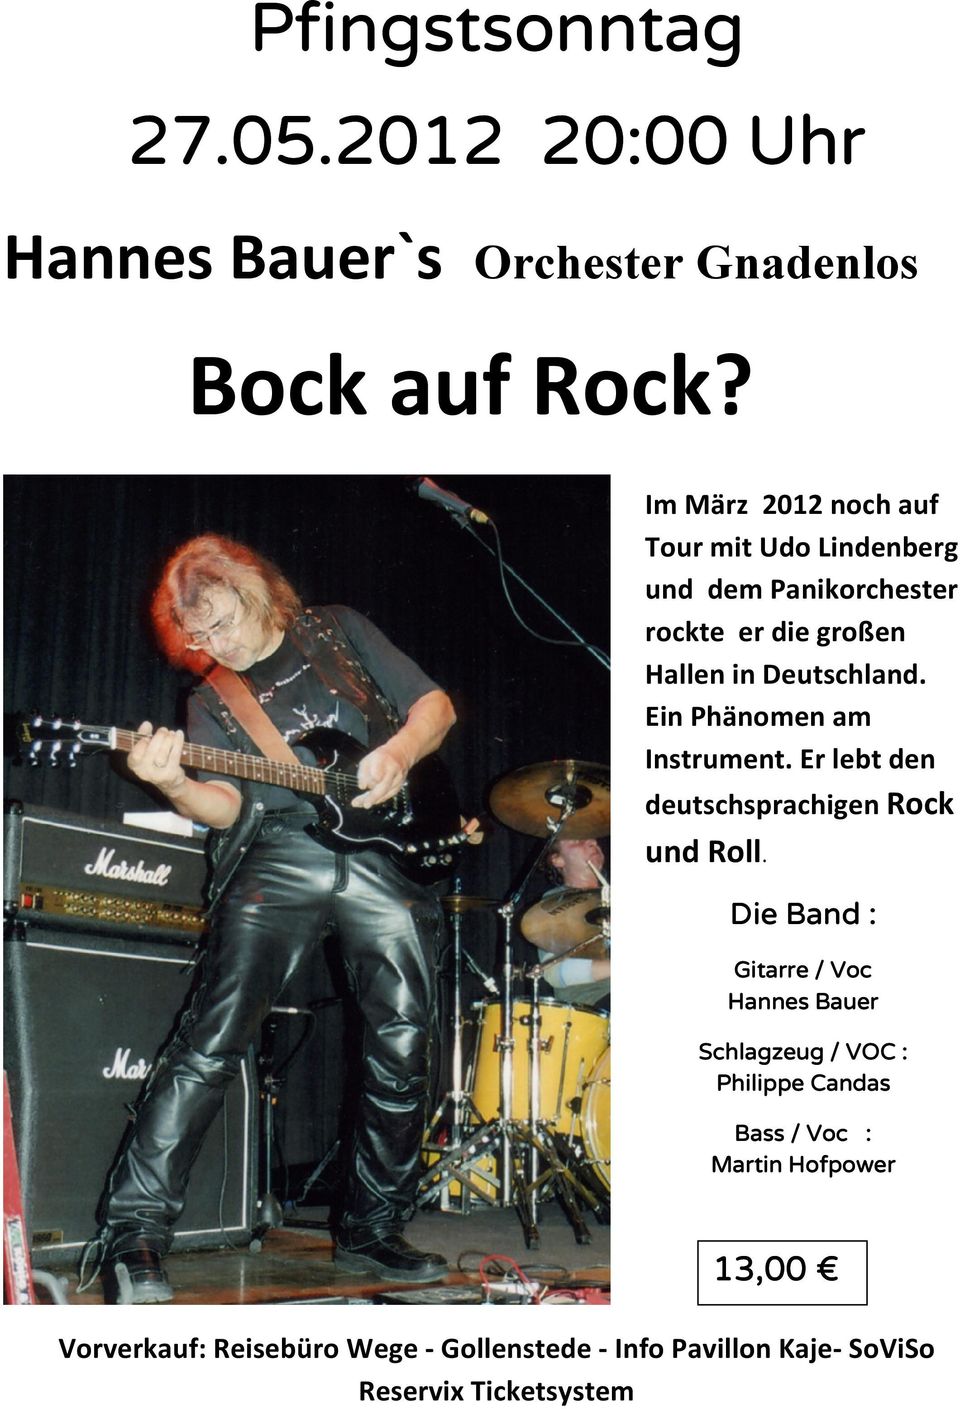 Ein Phänomen am Instrument. Er lebt den deutschsprachigen Rock und Roll.